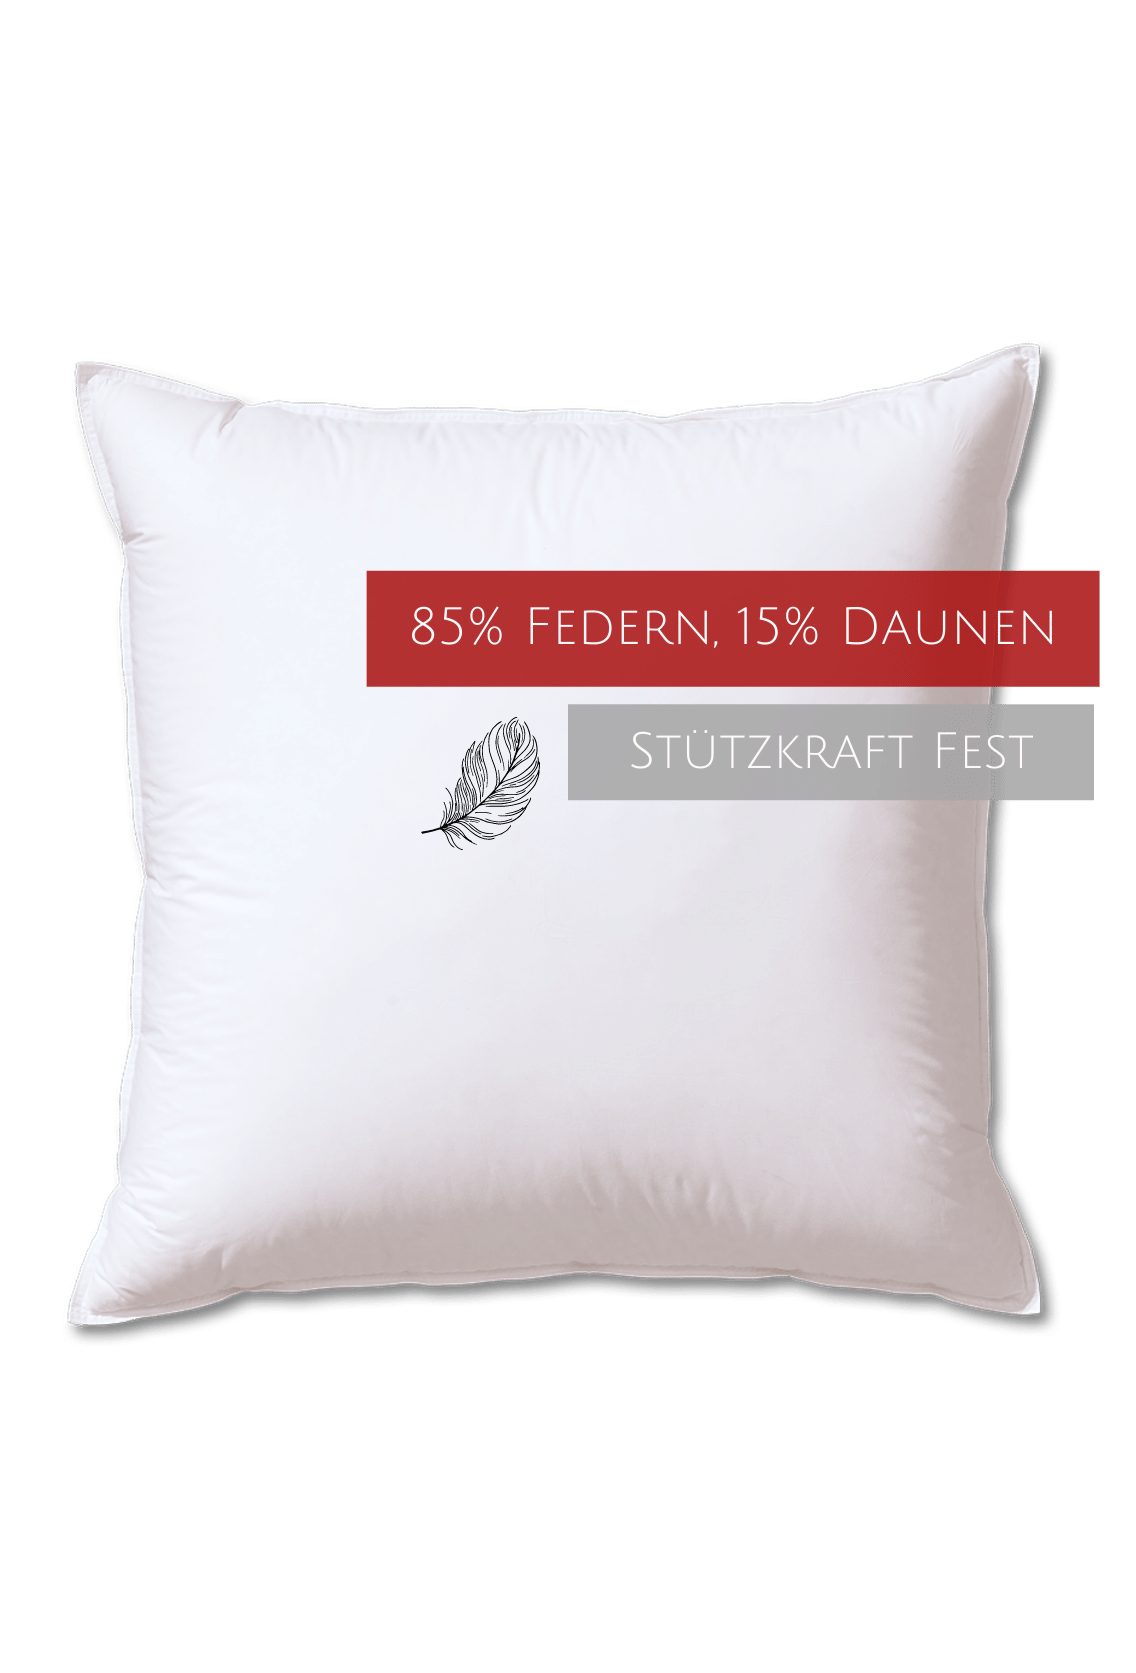 Kopfkissen Edition, Kauffmann, Füllung: 85% 15% Federn, Baumwolle, allergikerfreundlich Daunen, Bezug: 100